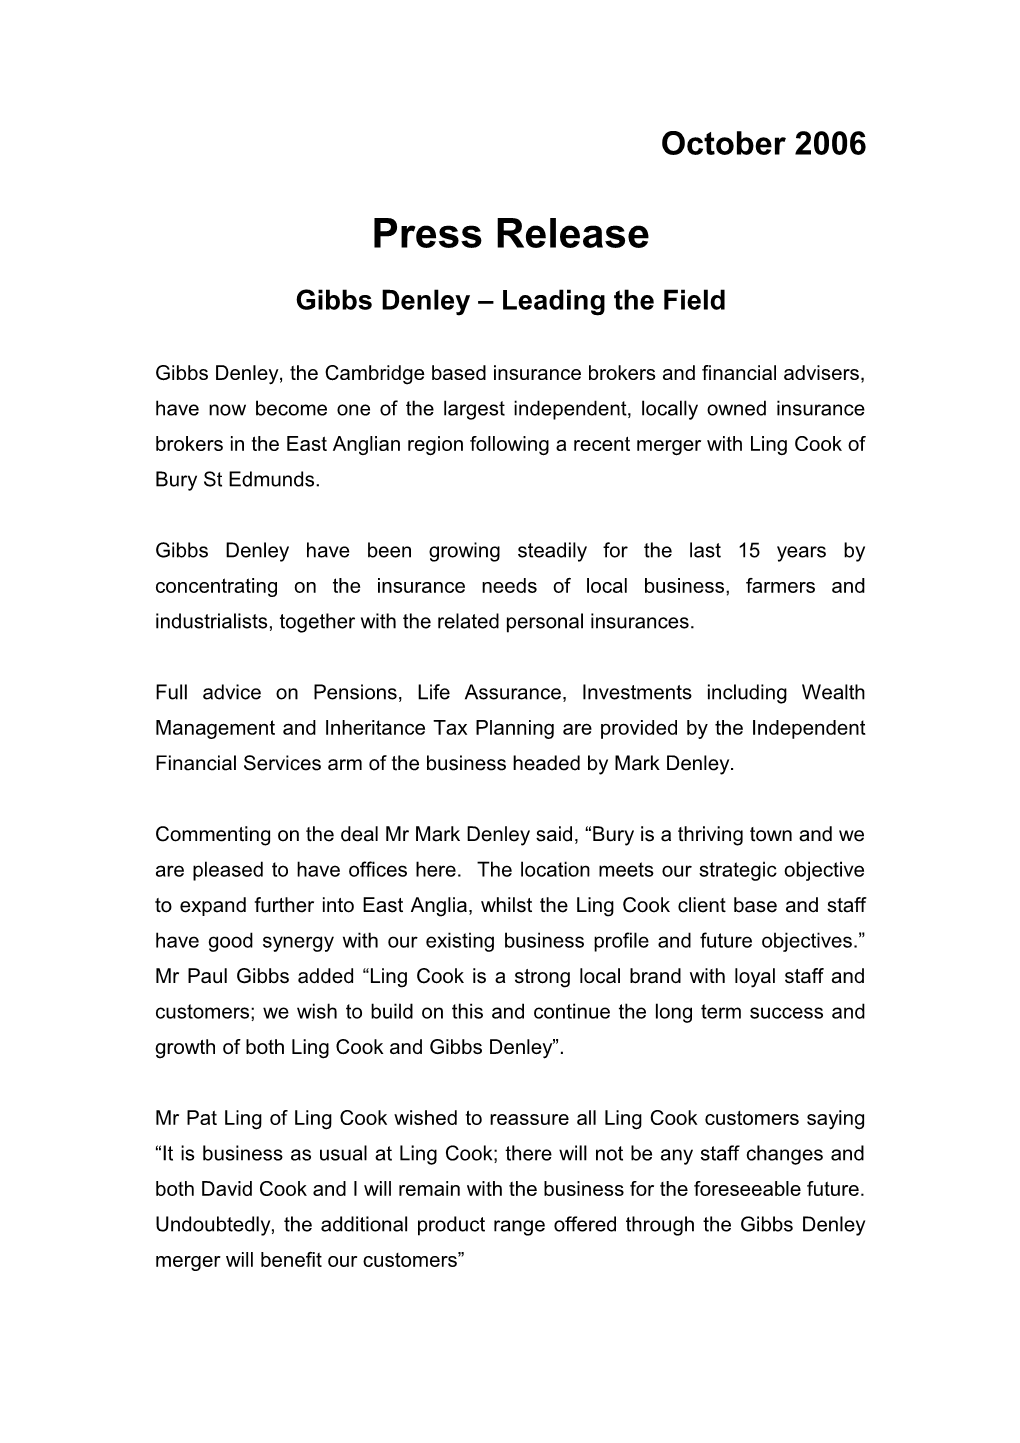 Gibbs Denley Draft Press Release